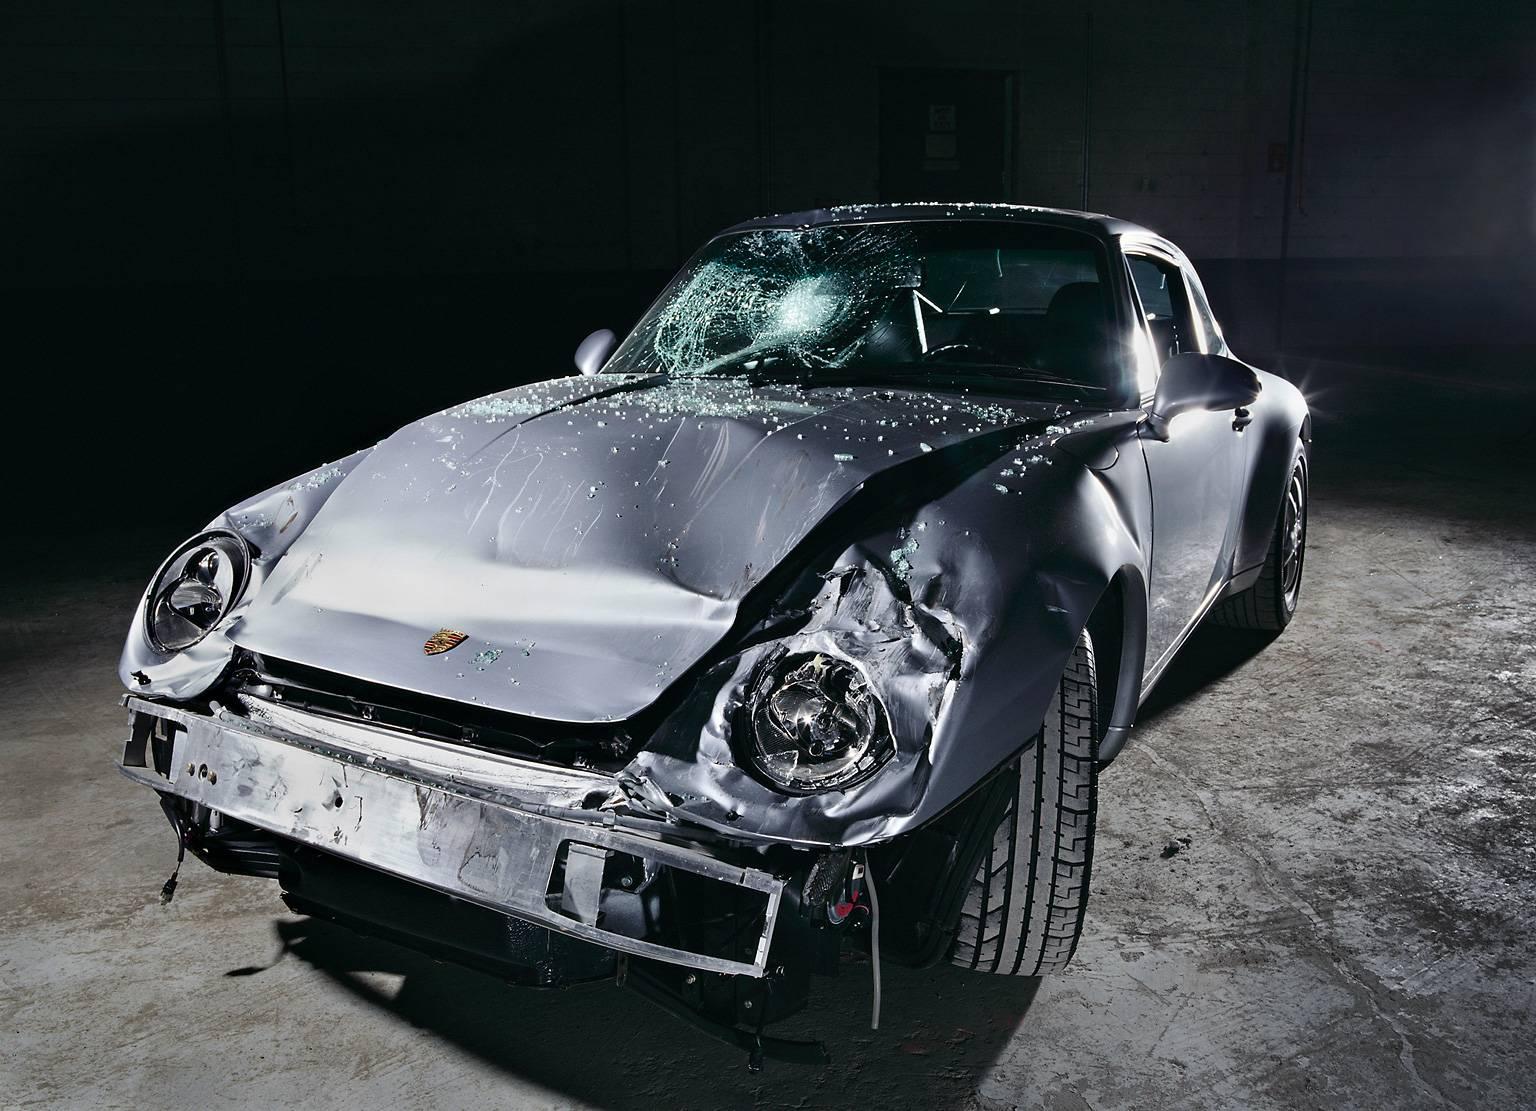 NINE-ONE-ONE (Porsche 911) – großformatige Studiofotografie eines verunglückten Autos